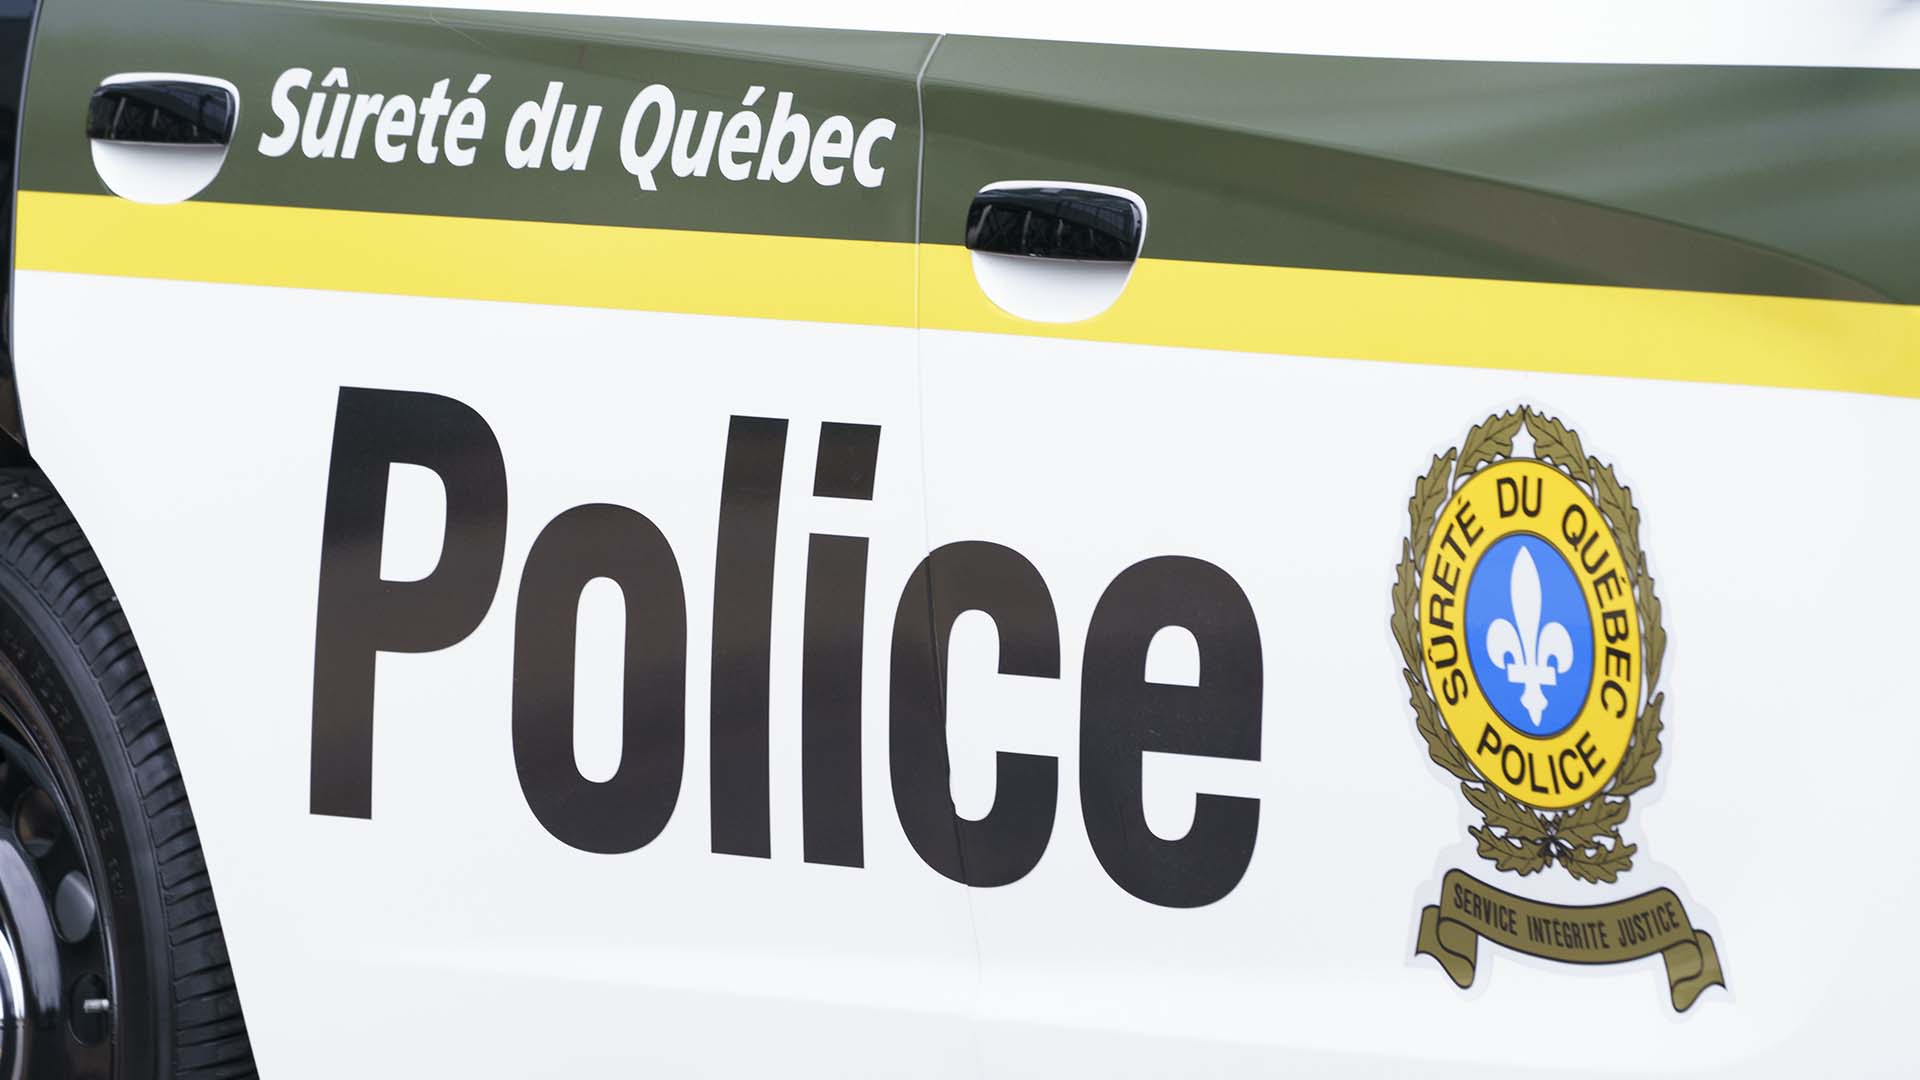 Un automobiliste circulant à très grande vitesse sur la route 263 à Nante, en Estrie, a été intercepté par des policiers de la Surêté du Québec (SQ), samedi dernier.